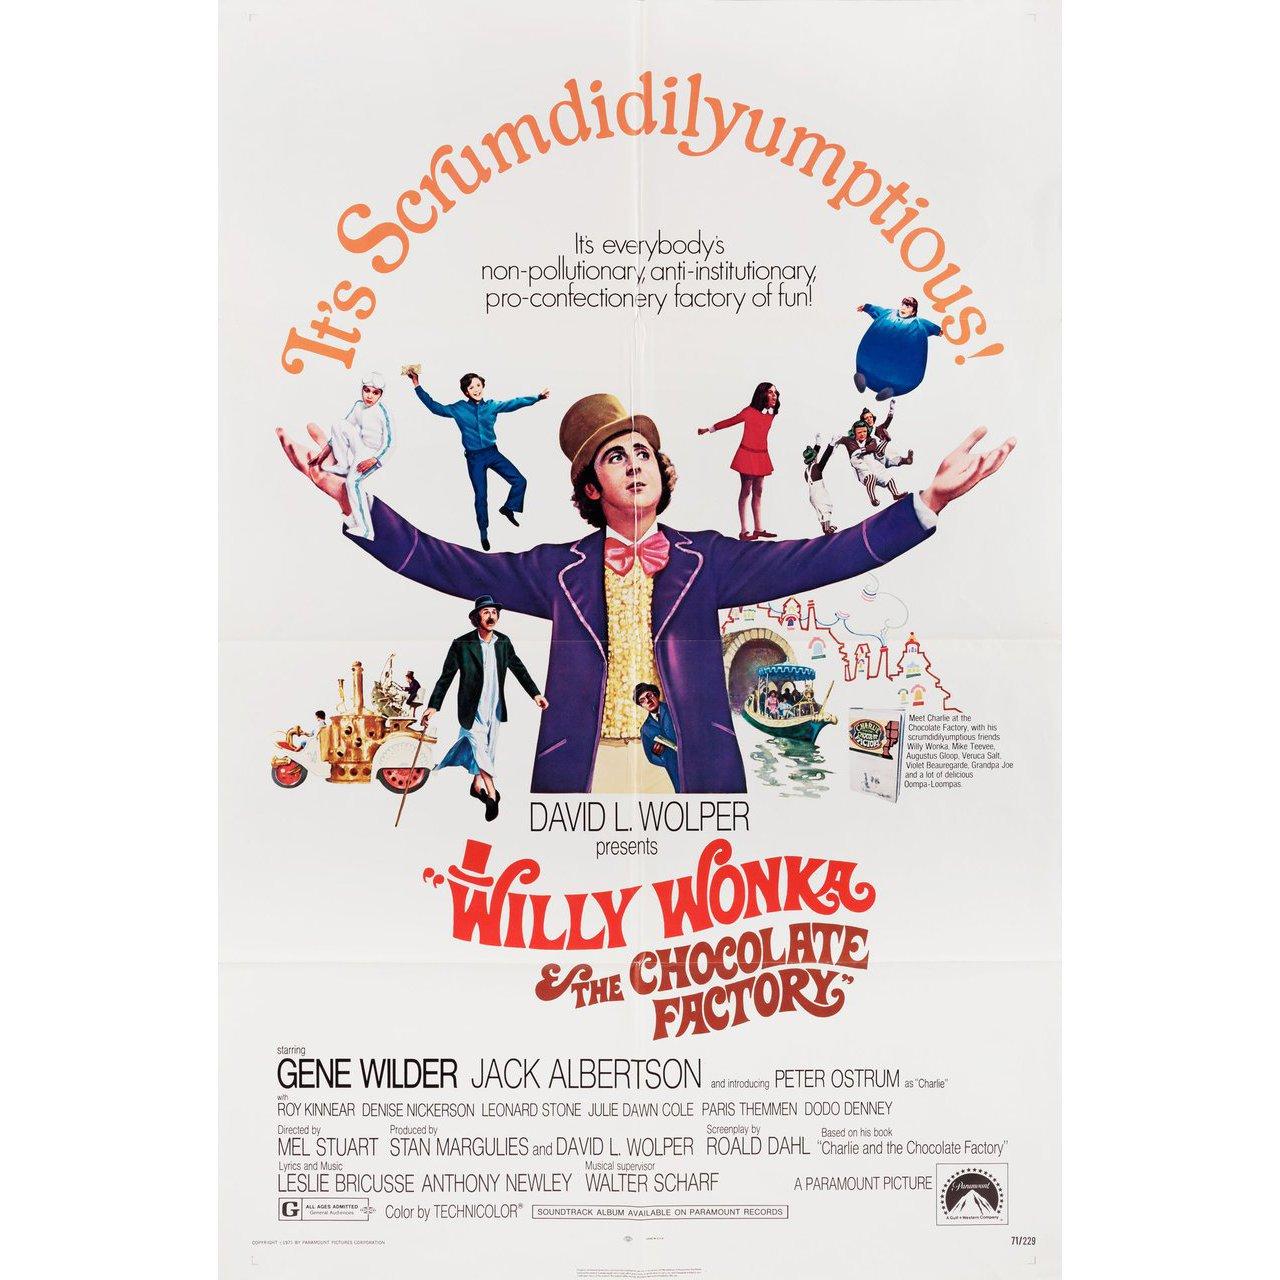 Affiche américaine originale de 1971 pour le film Willy Wonka et la chocolaterie réalisé par Mel Stuart avec Gene Wilder / Jack Albertson / Peter Ostrum / Roy Kinnear. Très bon état, plié. De nombreuses affiches originales ont été publiées pliées ou